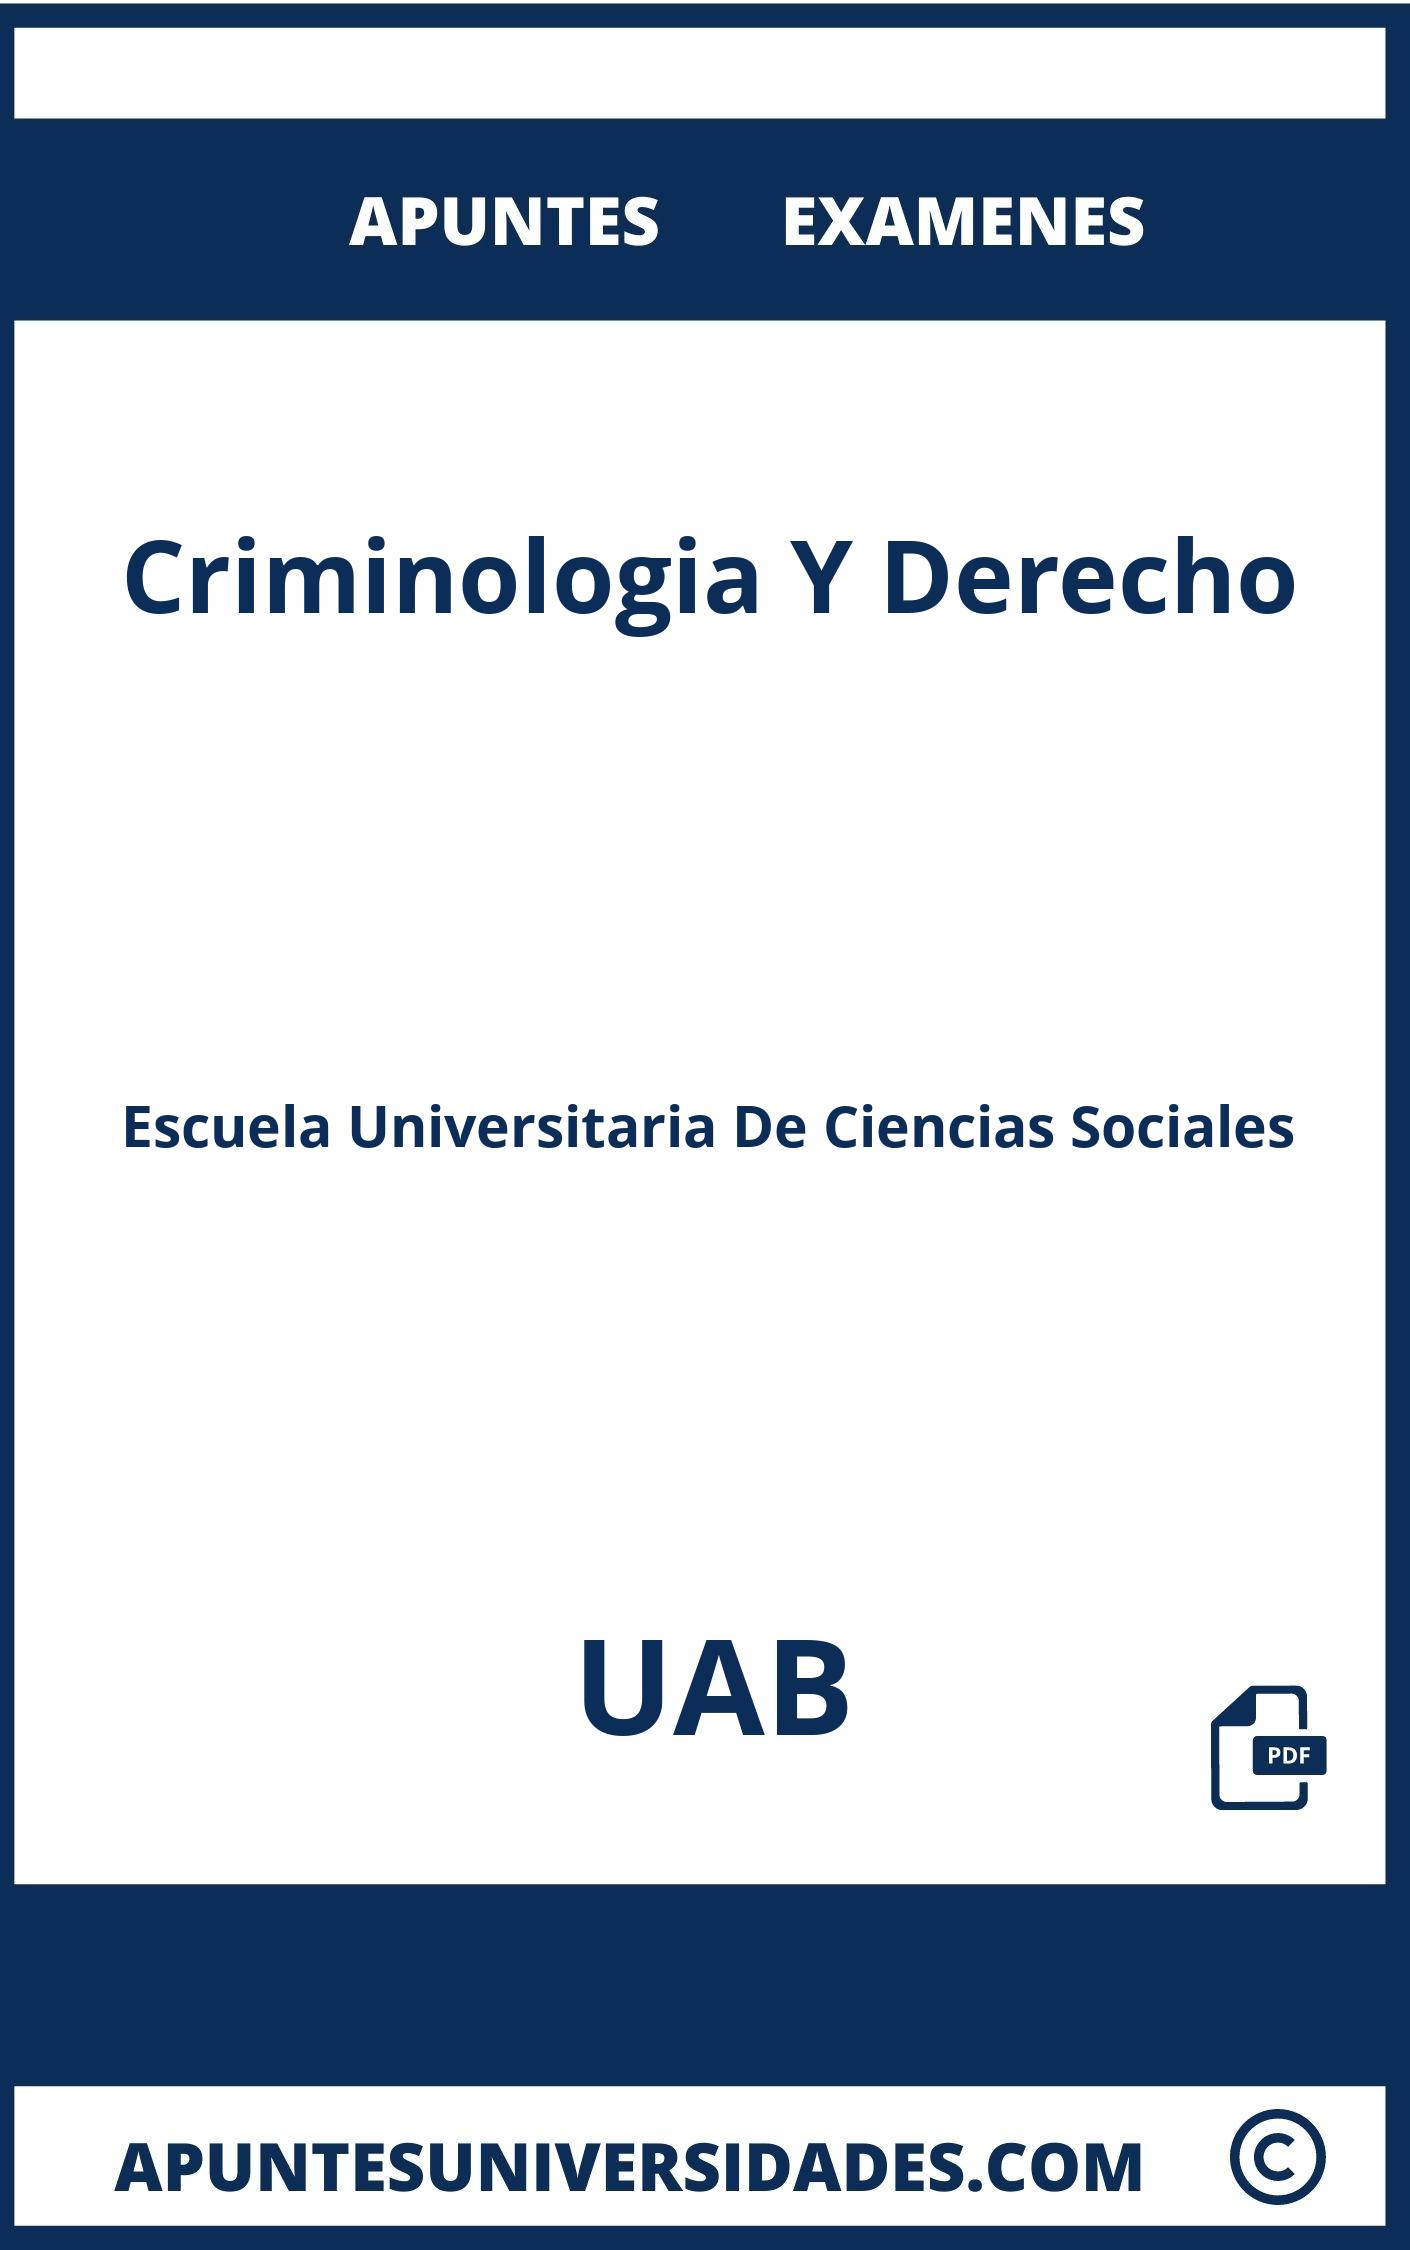 Examenes y Apuntes de Criminologia Y Derecho UAB